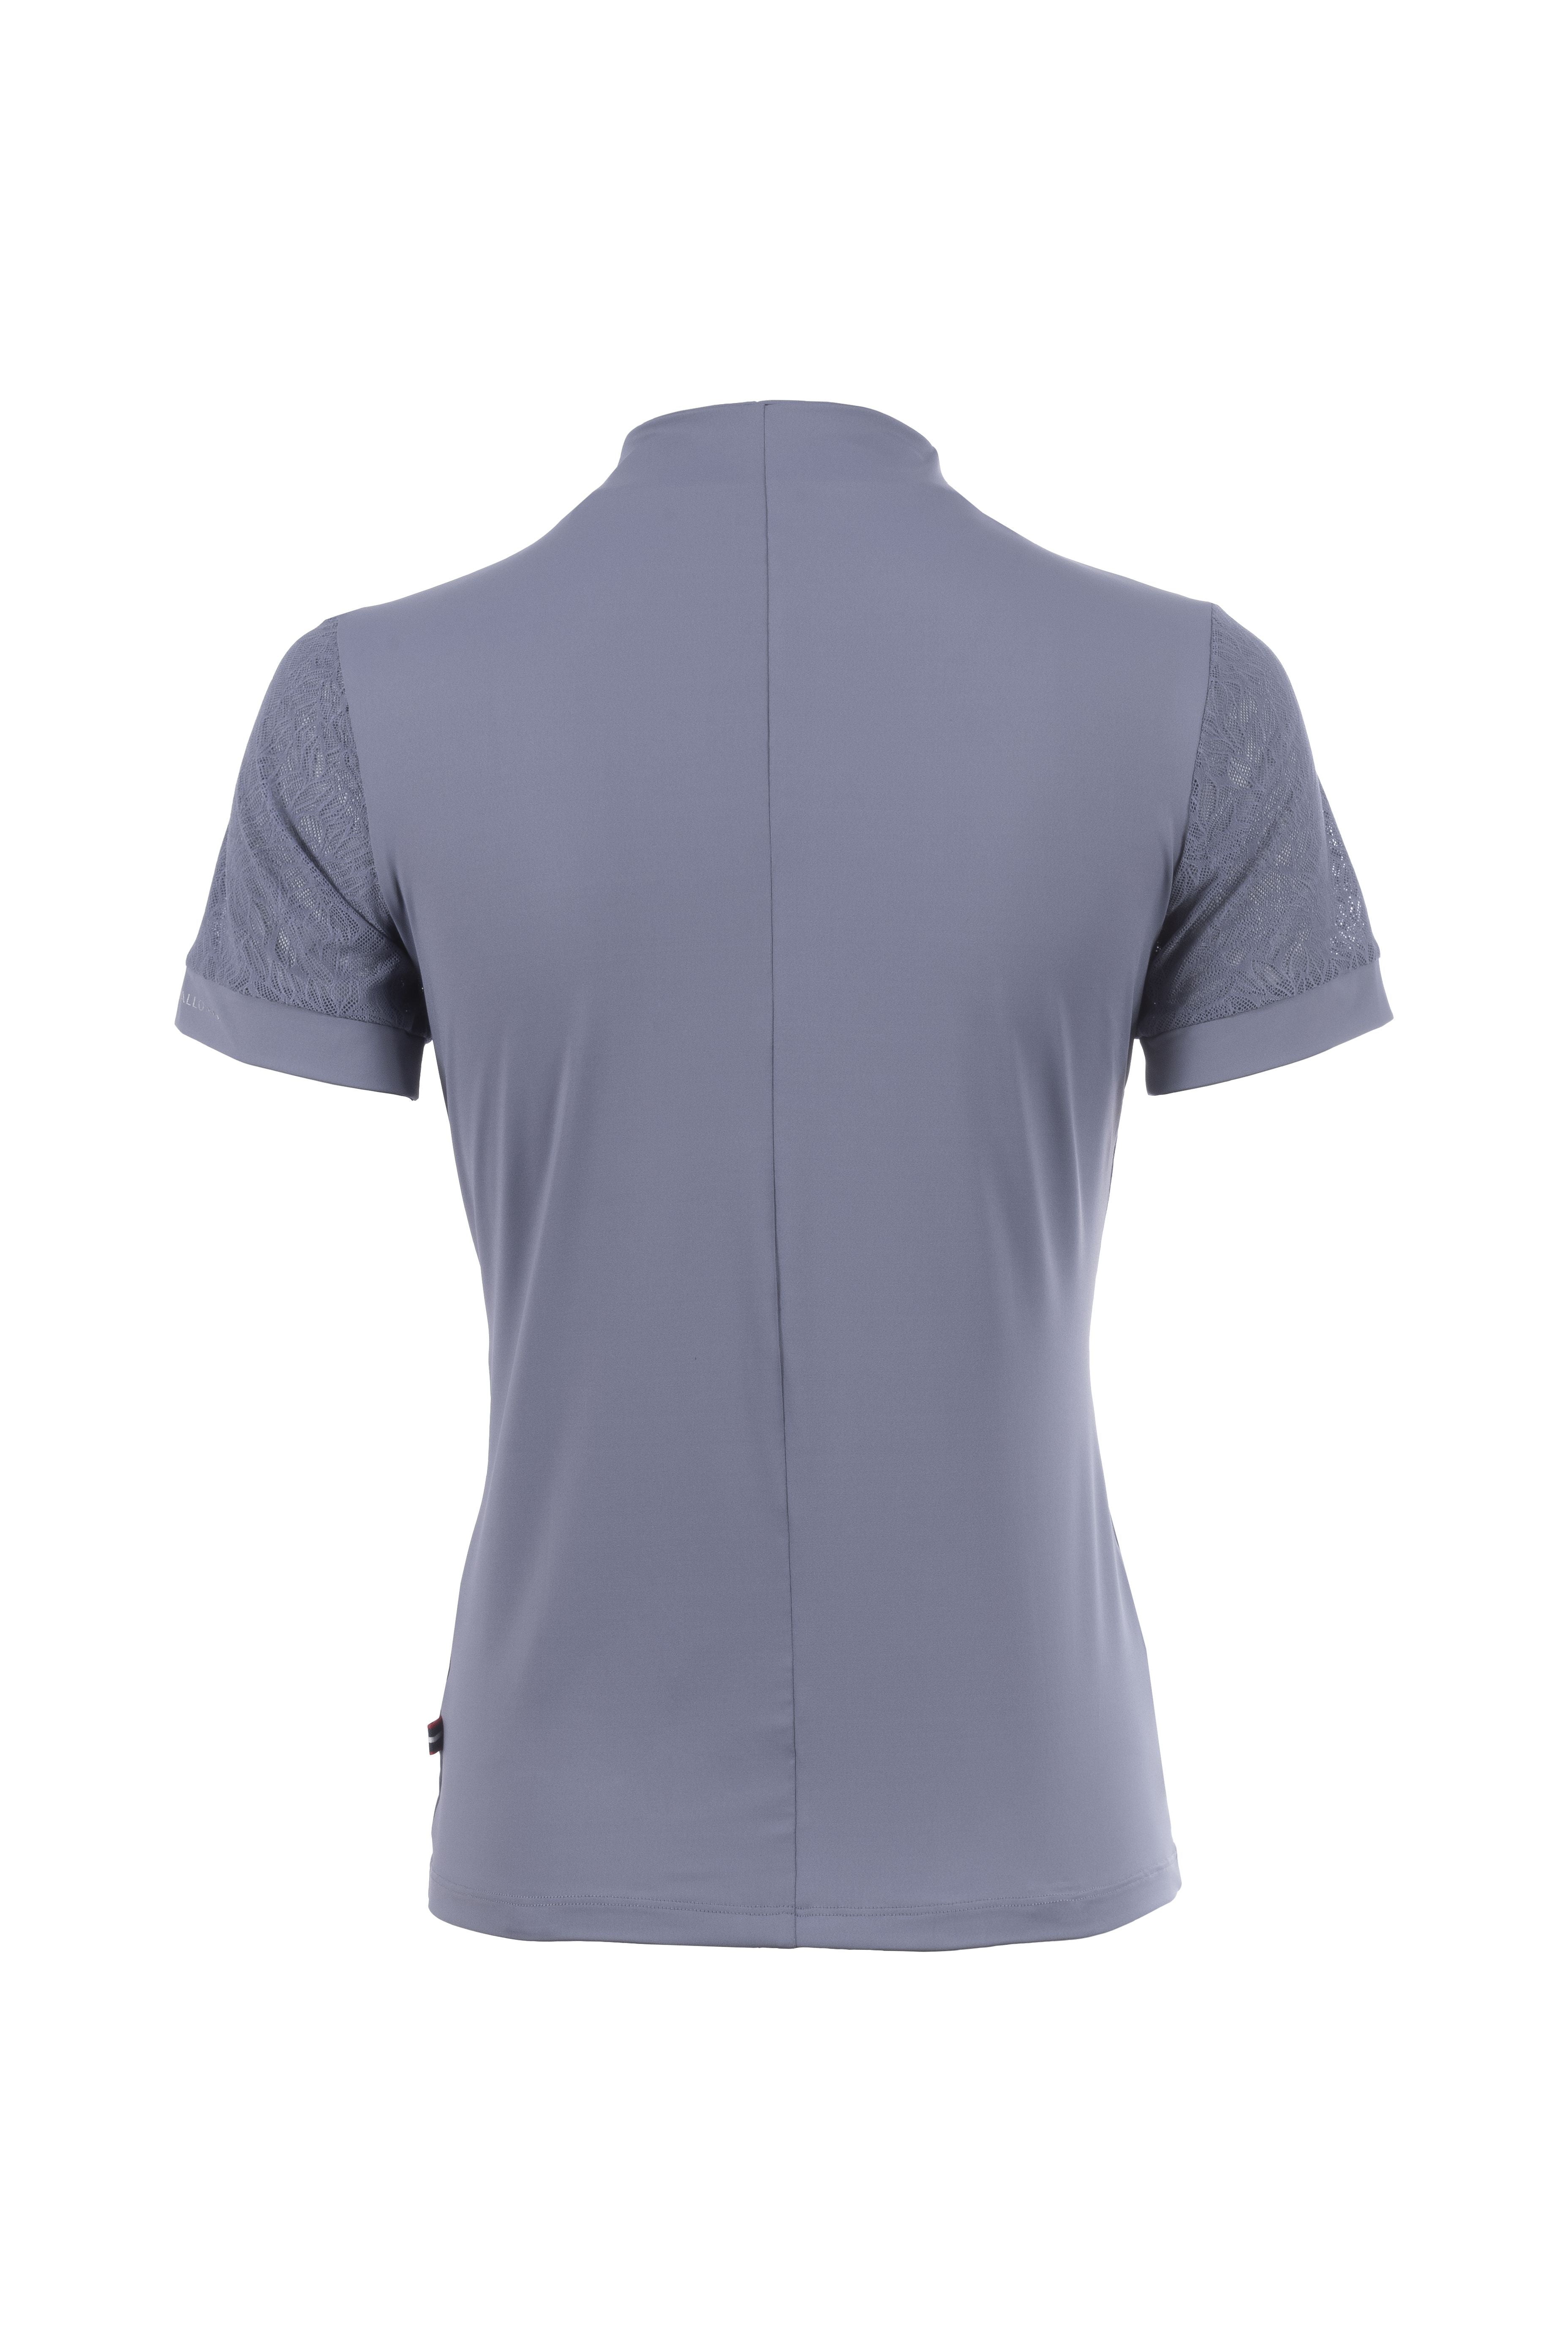 Shirt CAVAL LACE HALFZIP SHIRT - Reitstiefel Kandel - Dein Reitshop